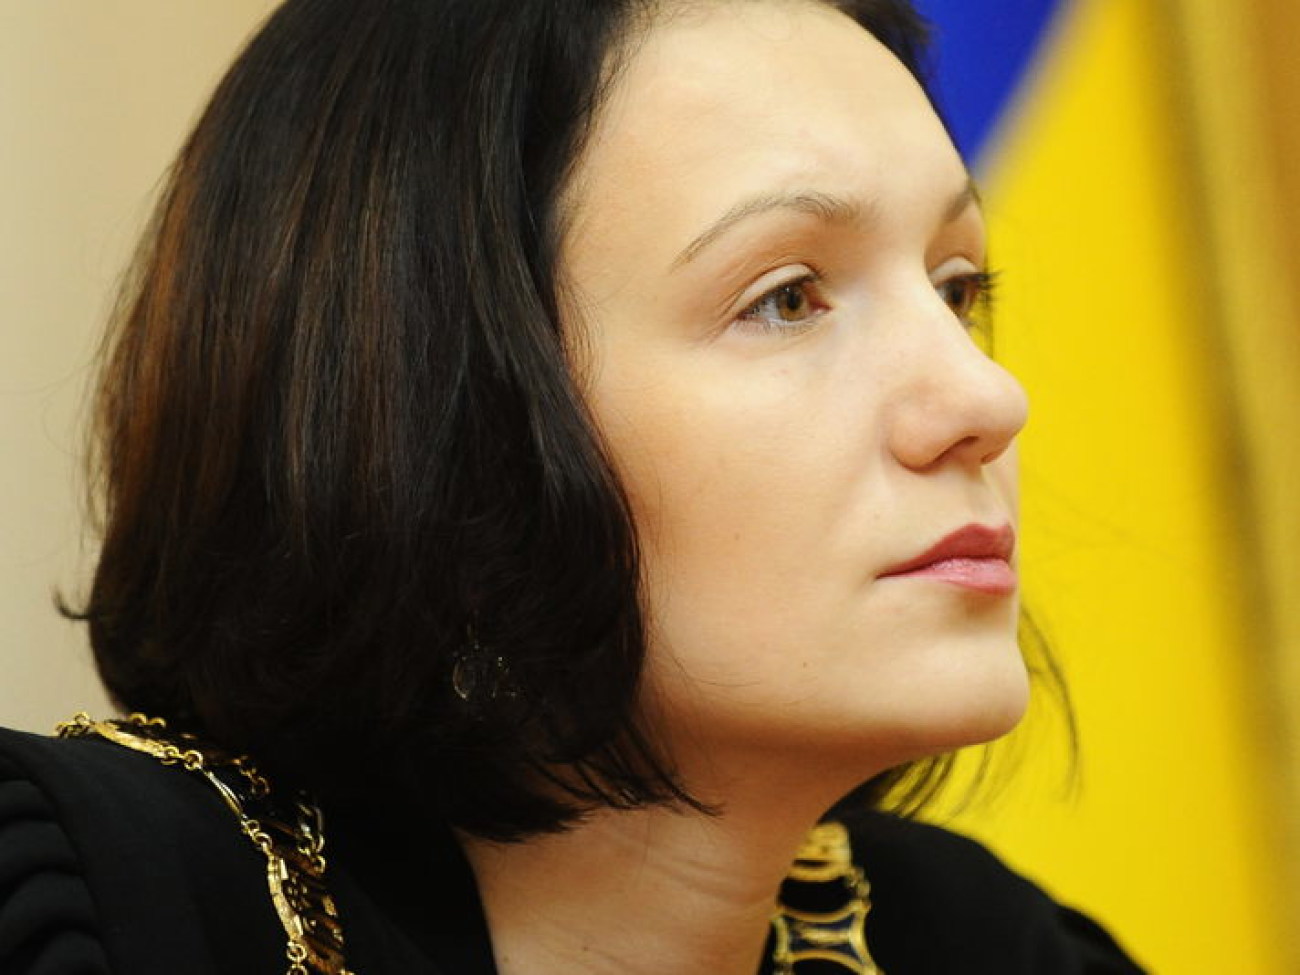 Заседание Киевского апелляционного суда по результатам голосования на 132-м и 197-м округах, 9 ноября 2012г.